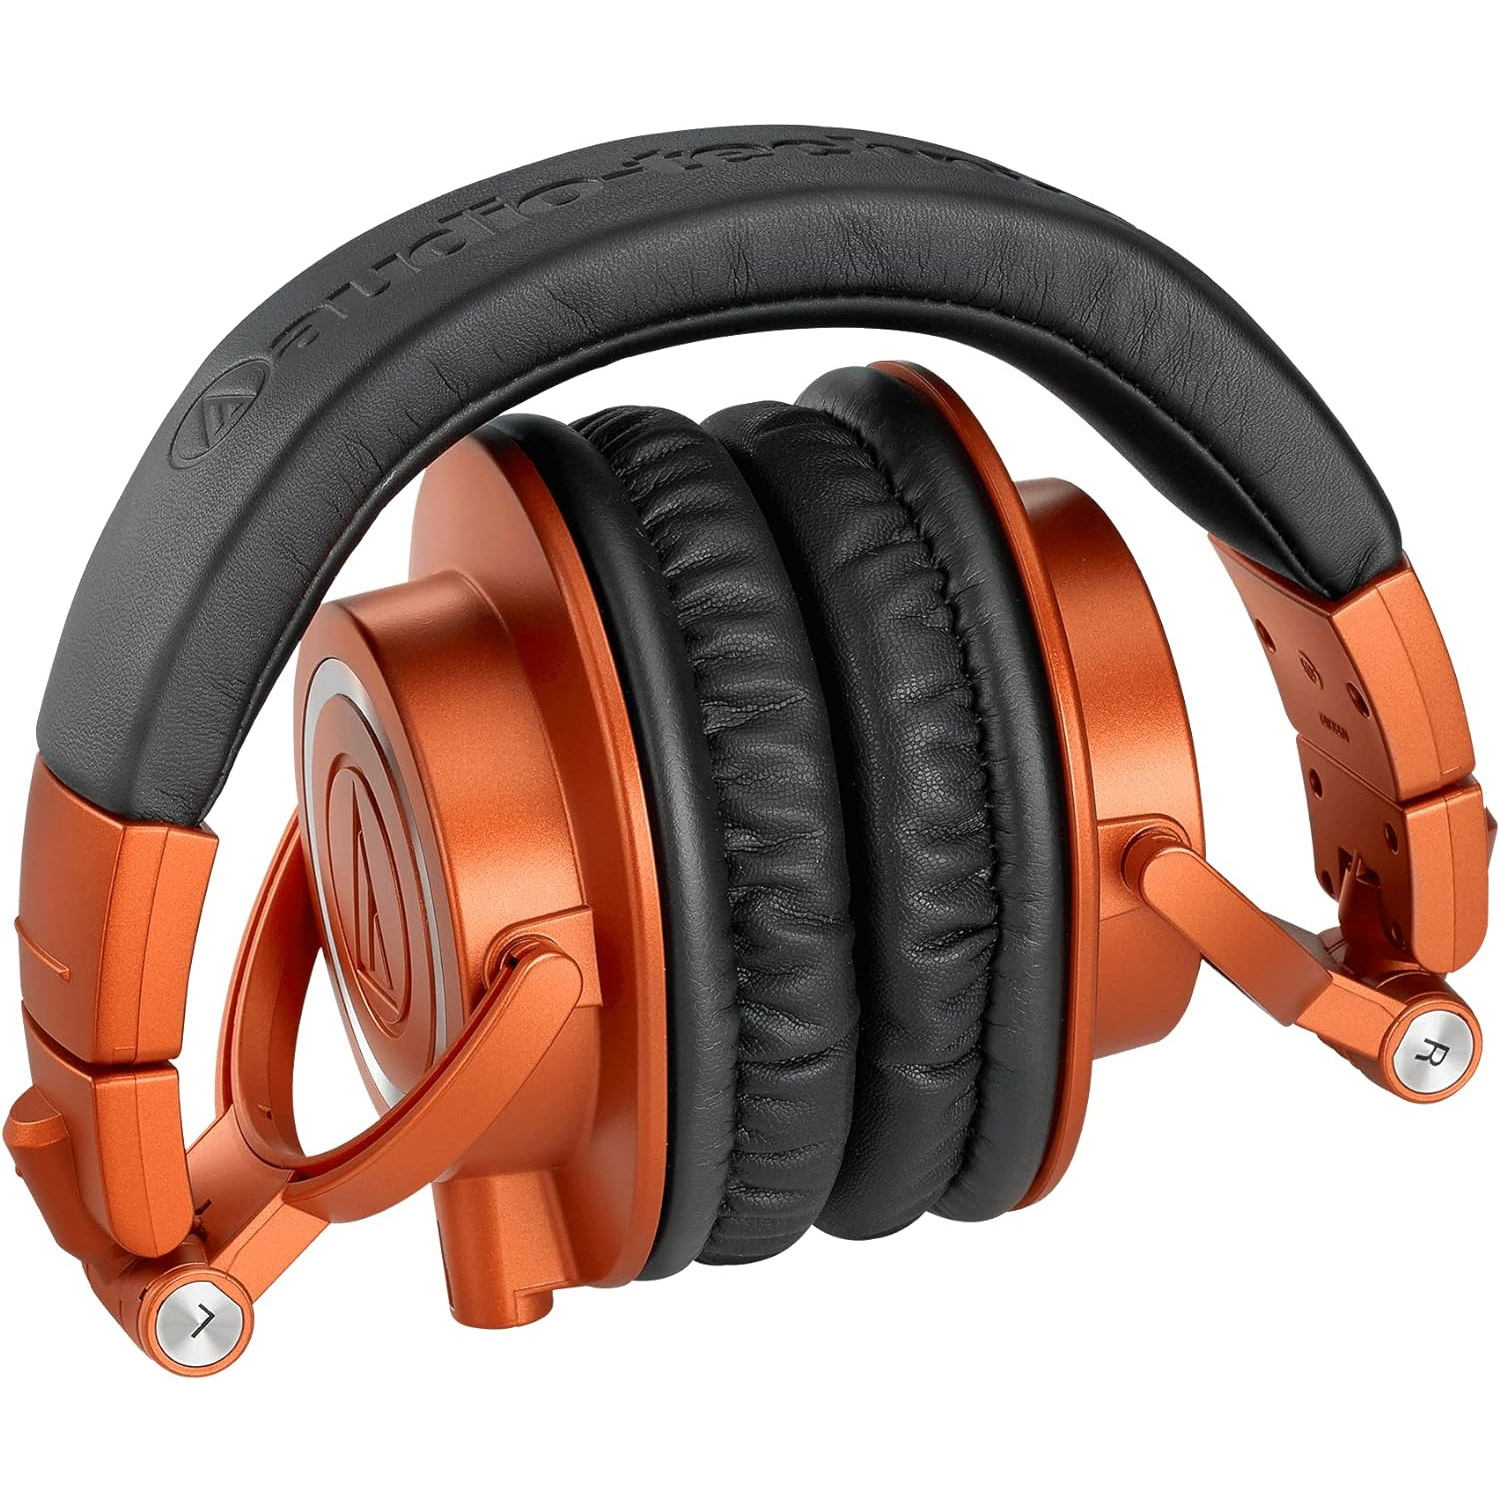 ATH-M50x Deep sea Auriculares de estudio cerrados Audio technica